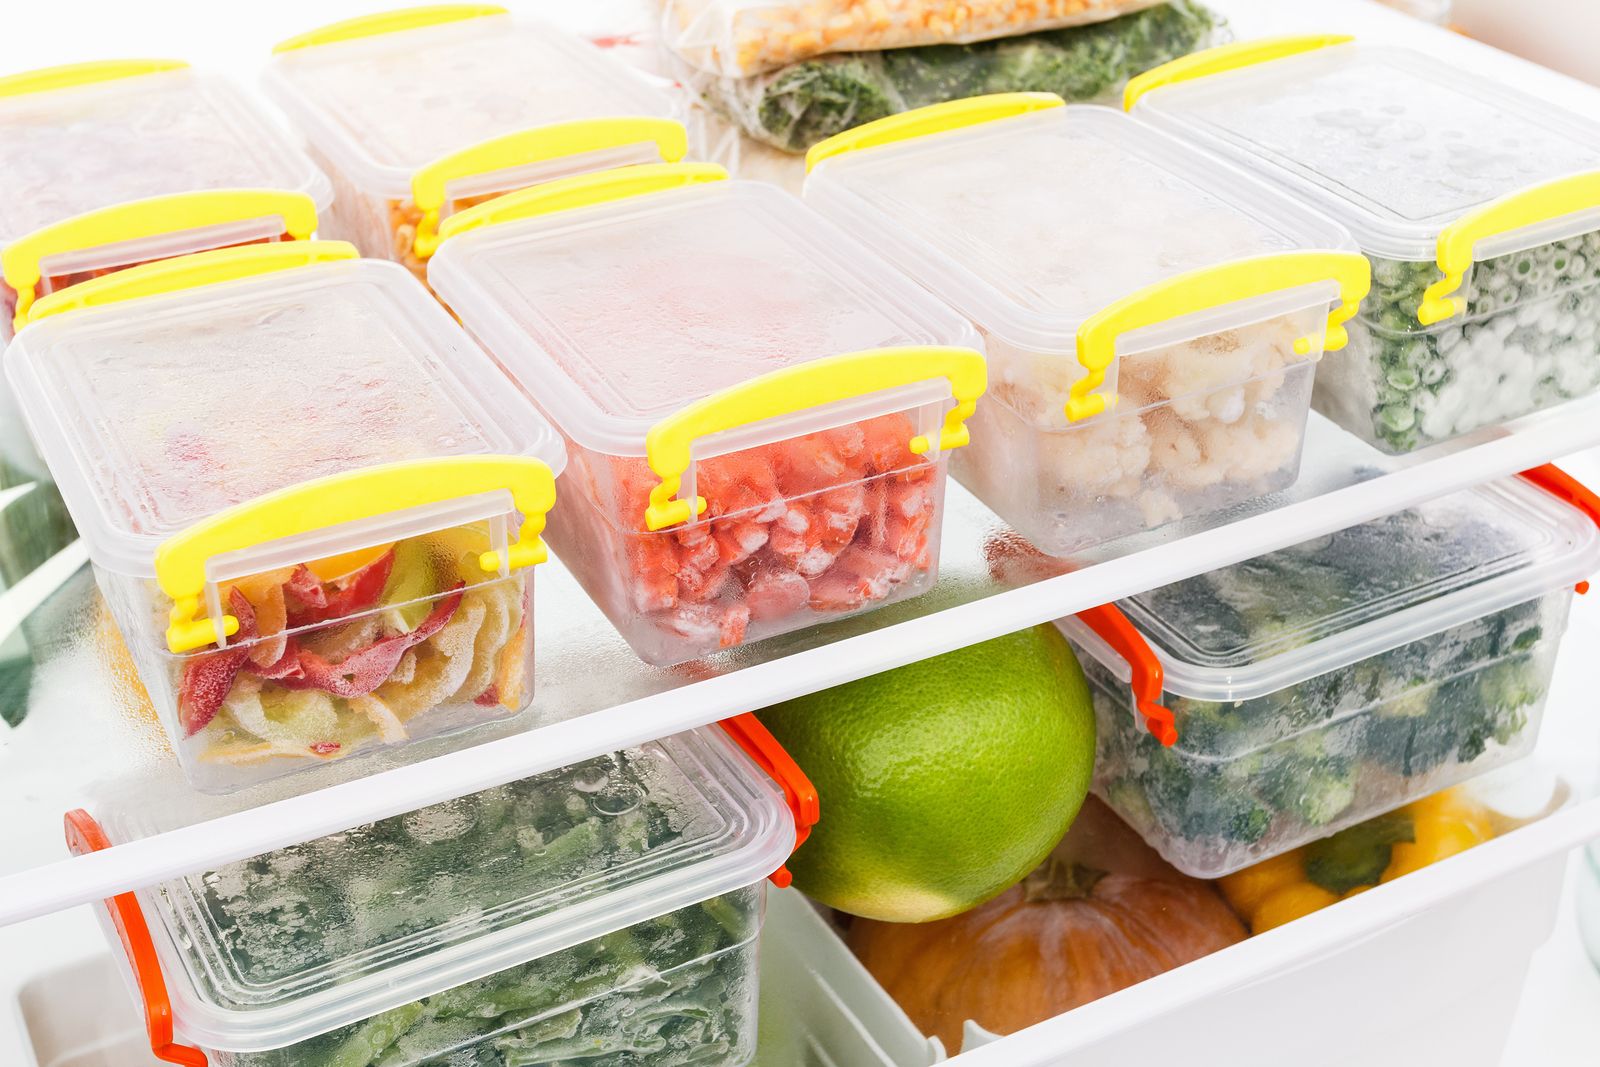 En detalle Amado Credo 6 alimentos que deberías tener siempre en tu congelador